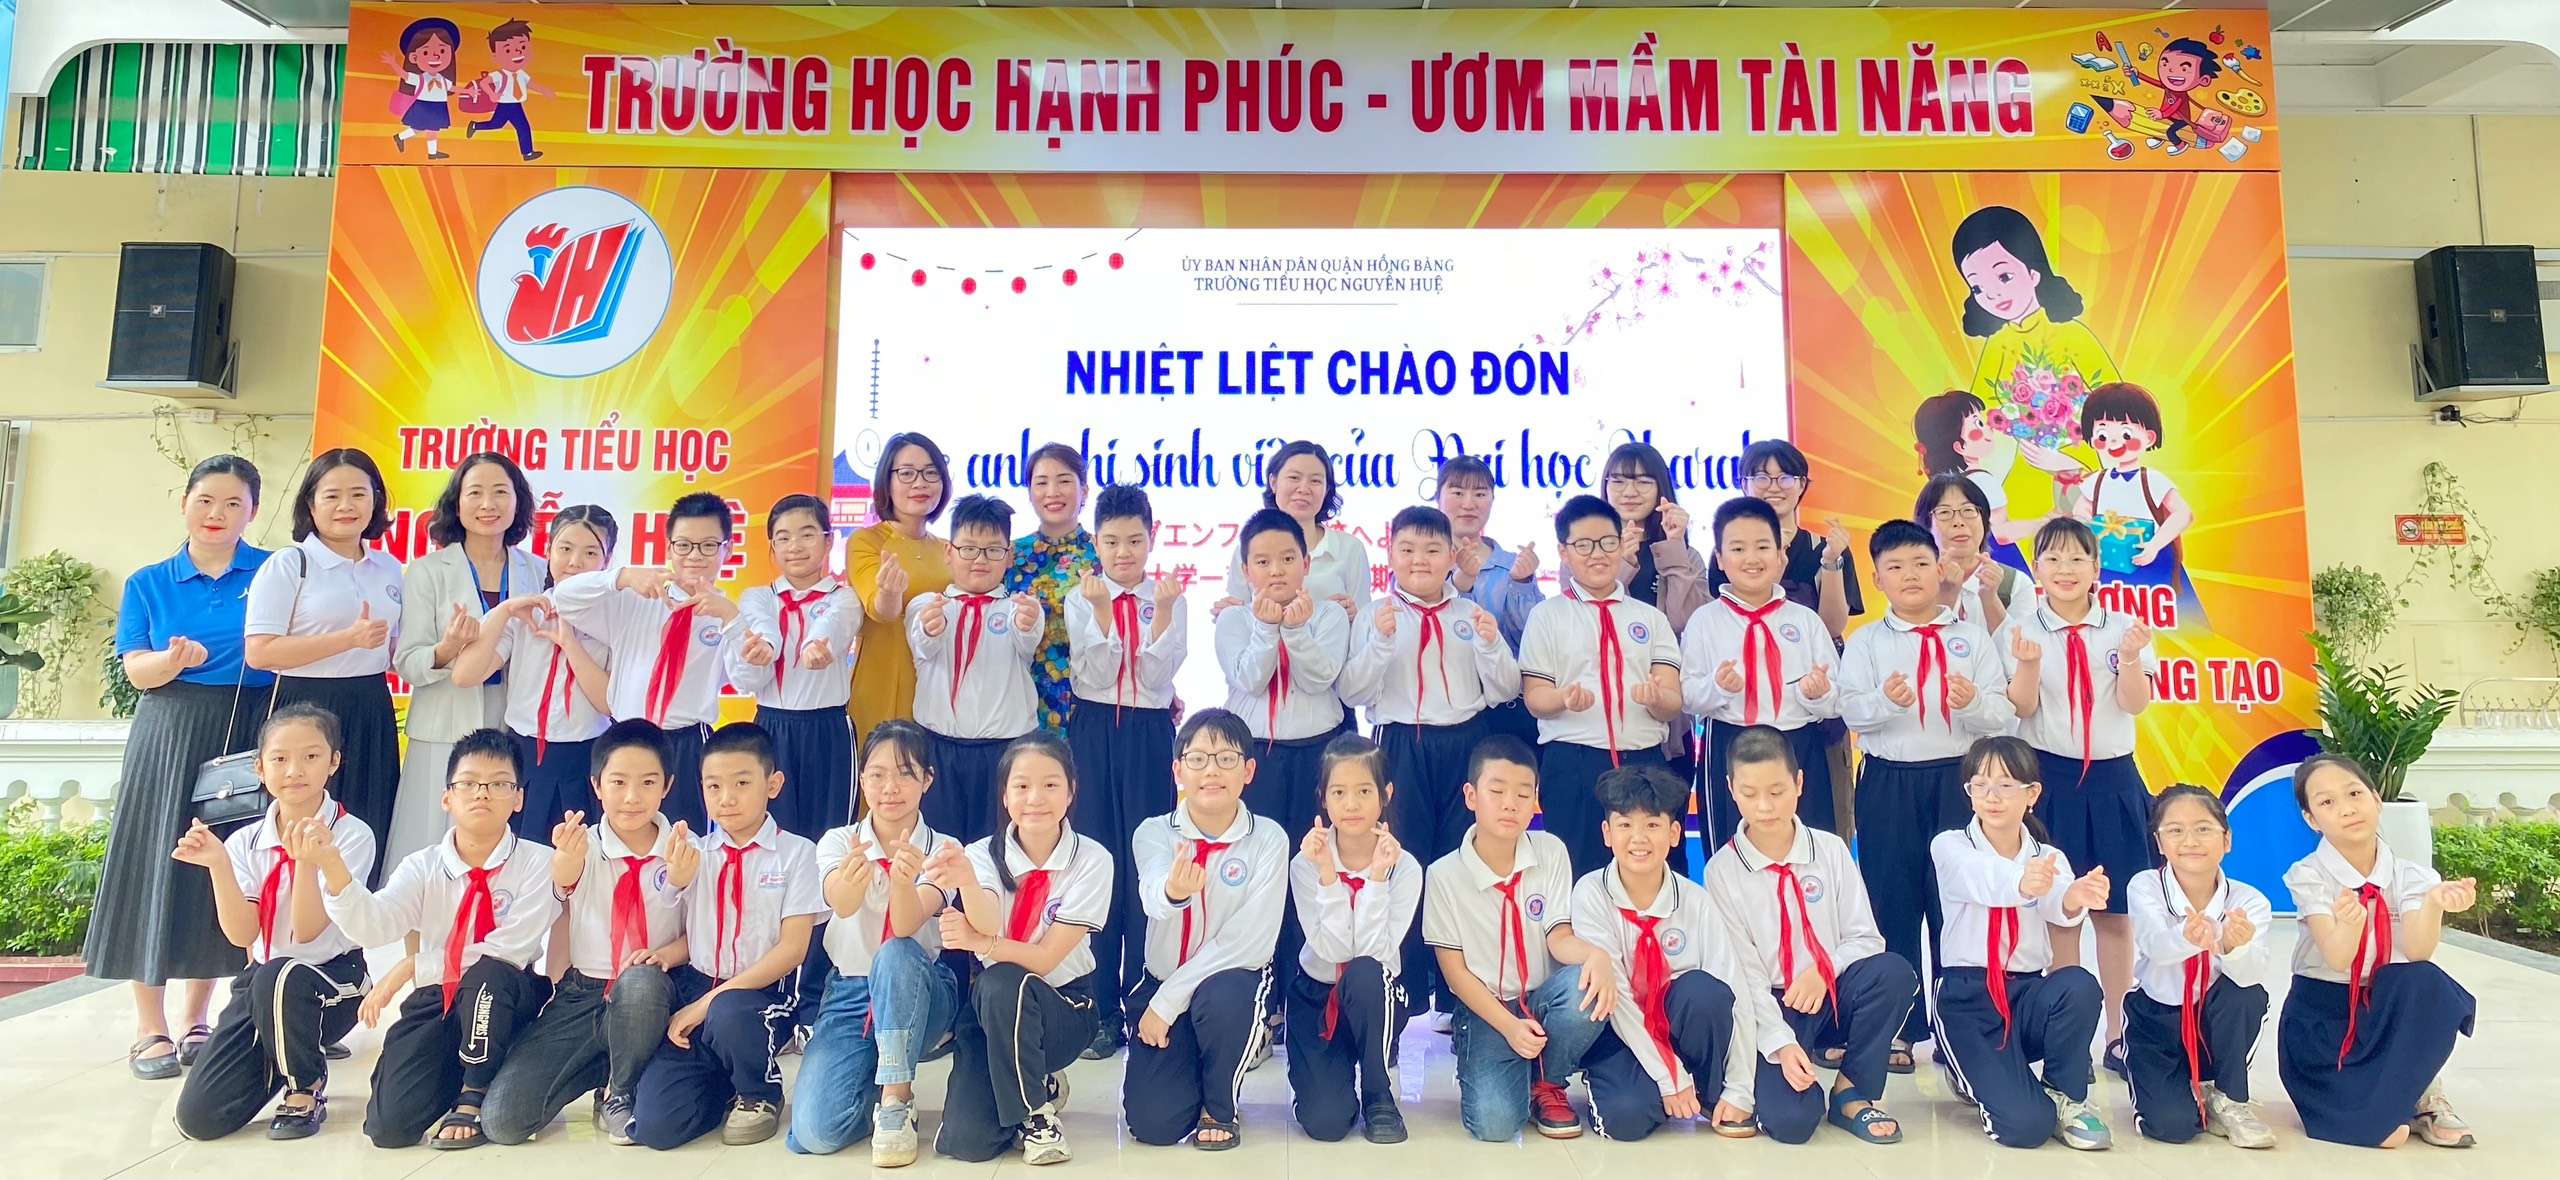 Giao lưu học tập Việt - Nhật tại trường tiểu học Nguyễn Huệ